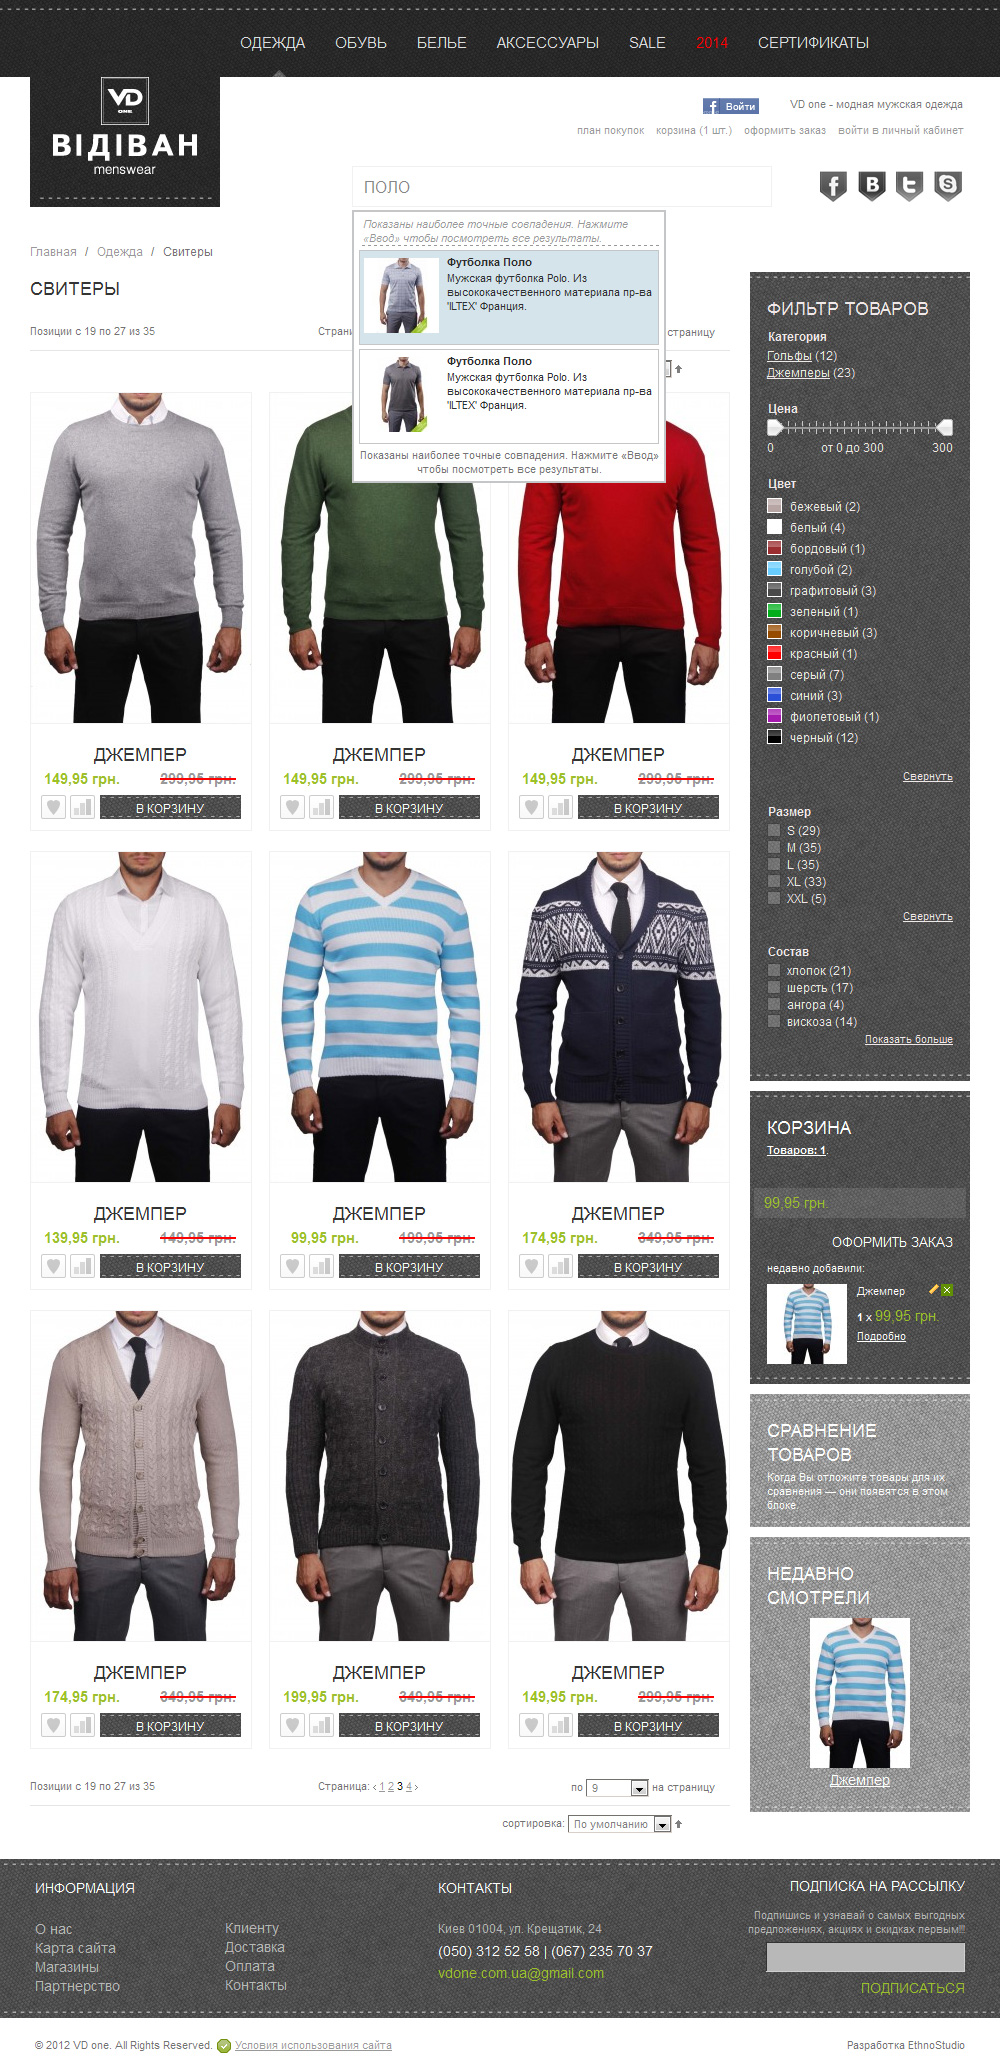 Интернет-магазин мужской одежды VDone